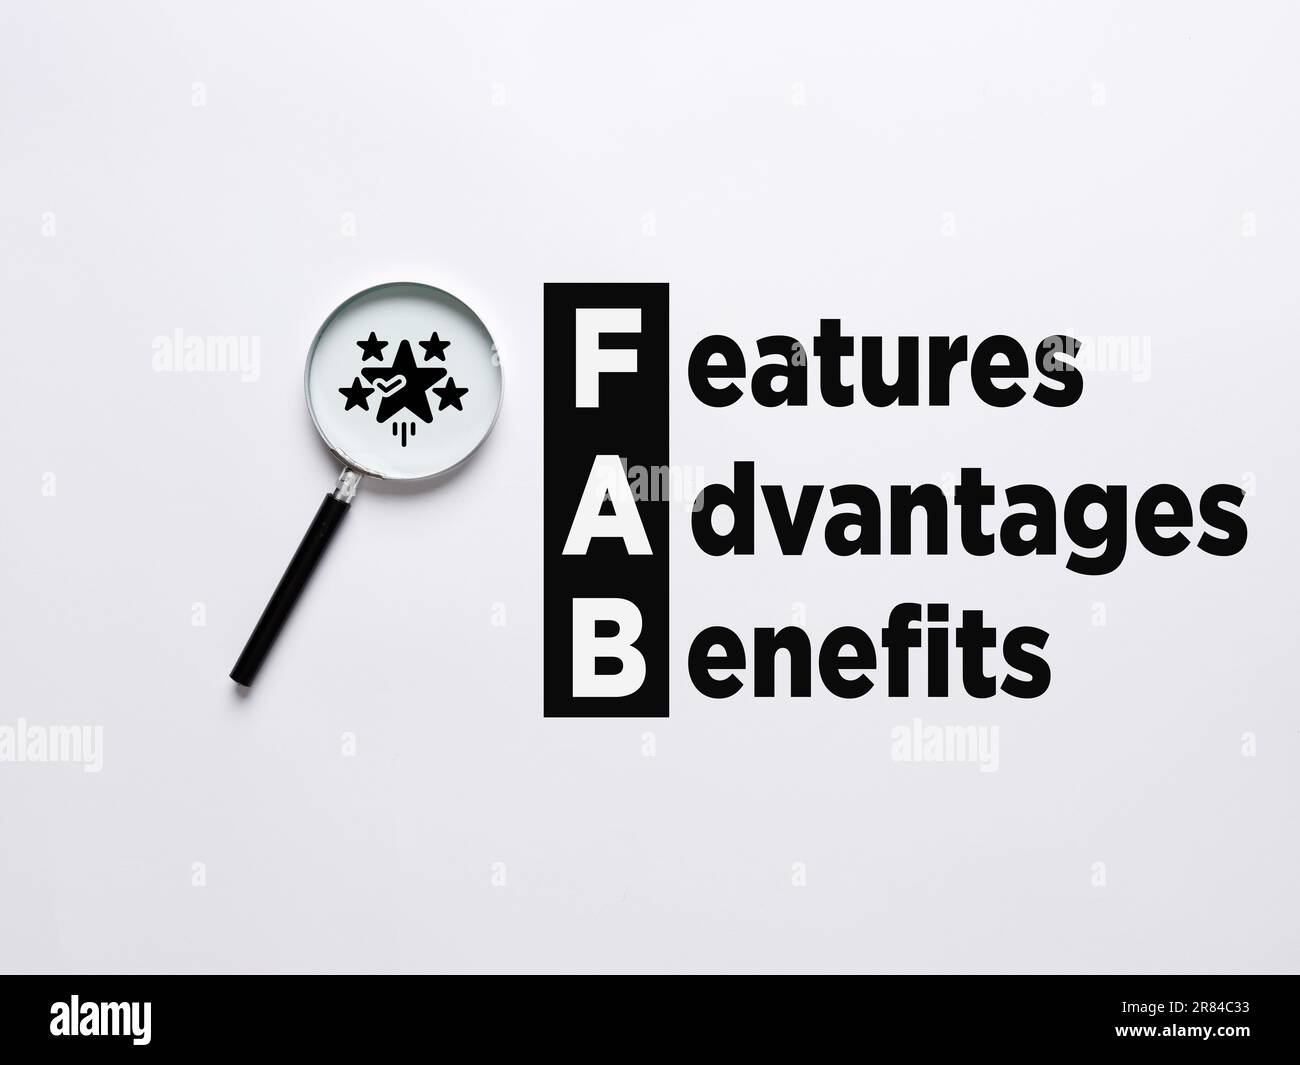 Acronyme commercial FAB - avantages de Feature Advantage. La loupe agrandit les symboles en étoile avec le mot FAB caractéristiques avantages avantages. Banque D'Images